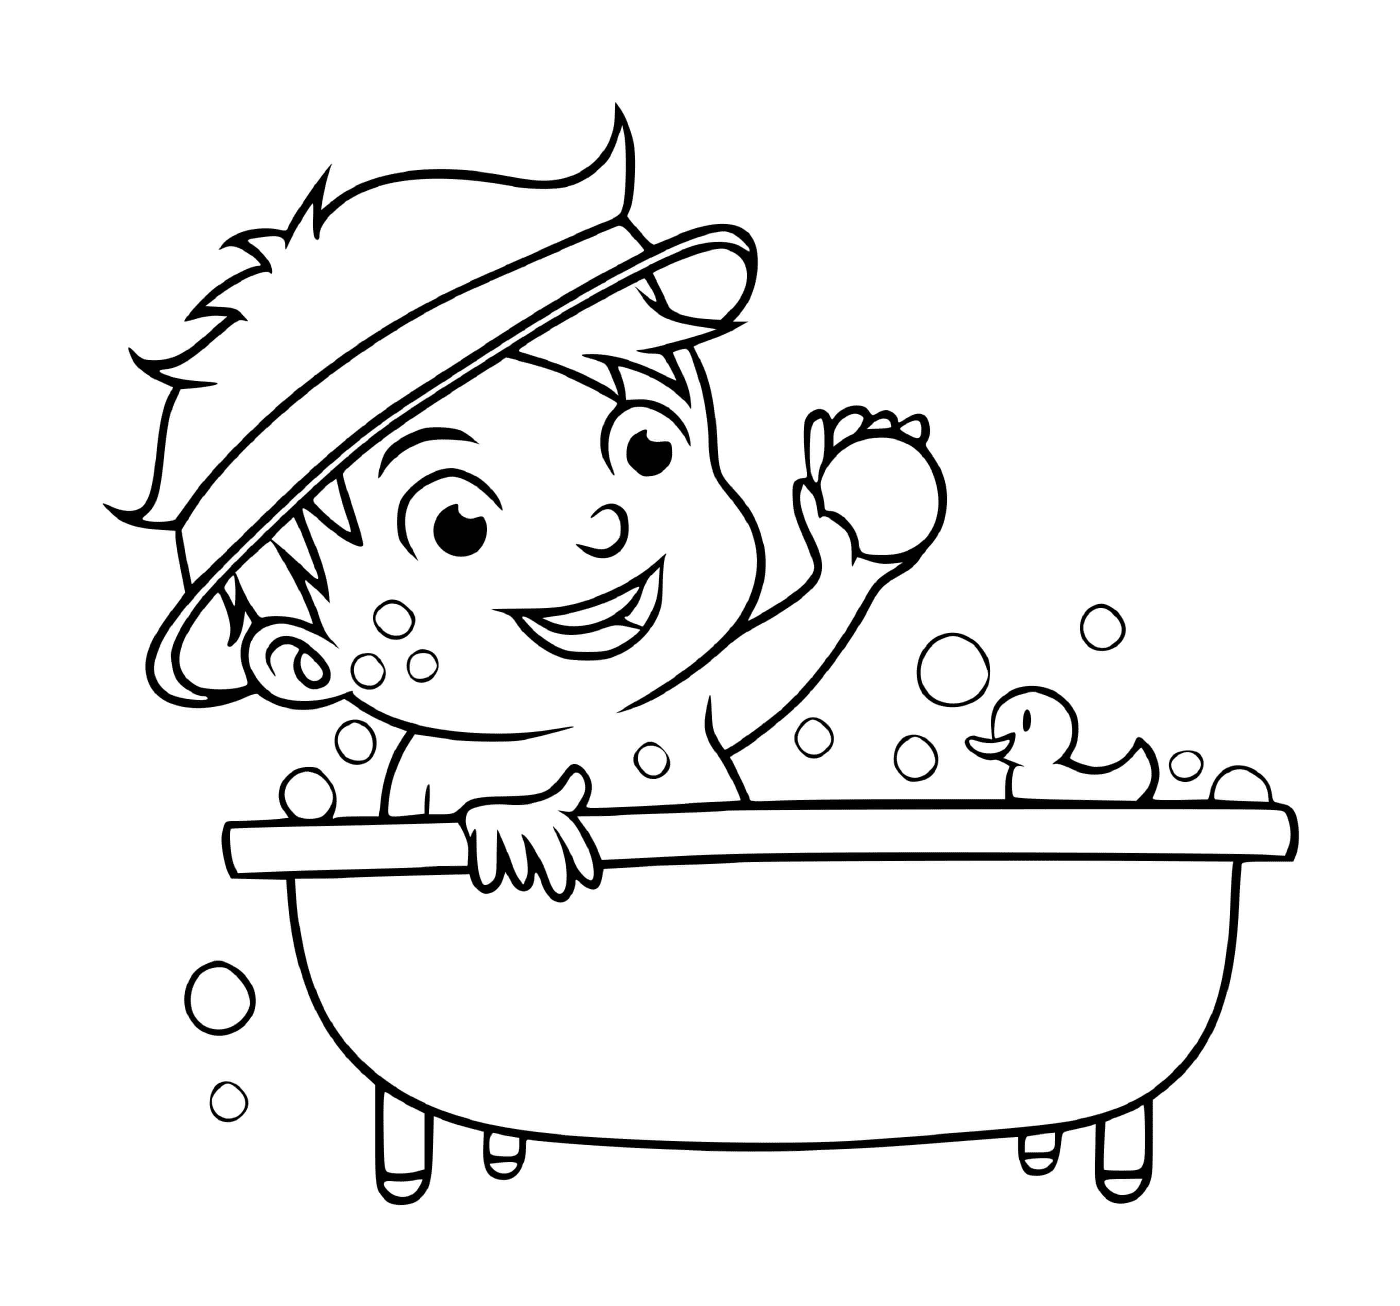  الولد يأخذ حماماً ليبقى نظيفاً 